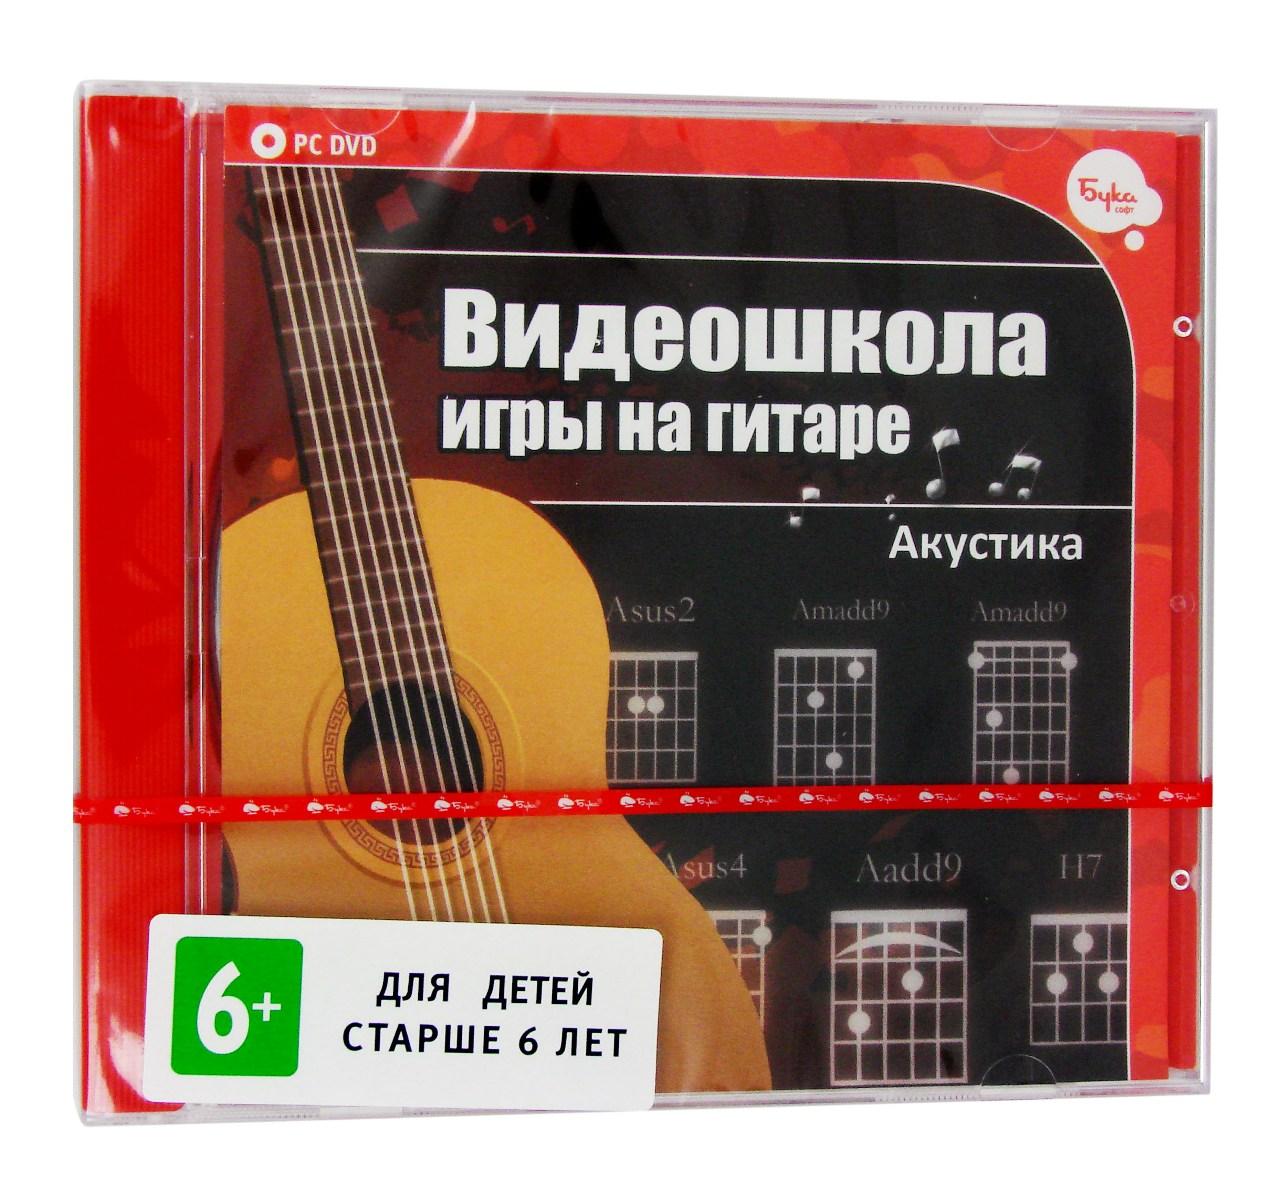 Компьютерный компакт-диск Видеошкола игры на гитаре. Акустика (ПК), фирма "Бука", 1DVD